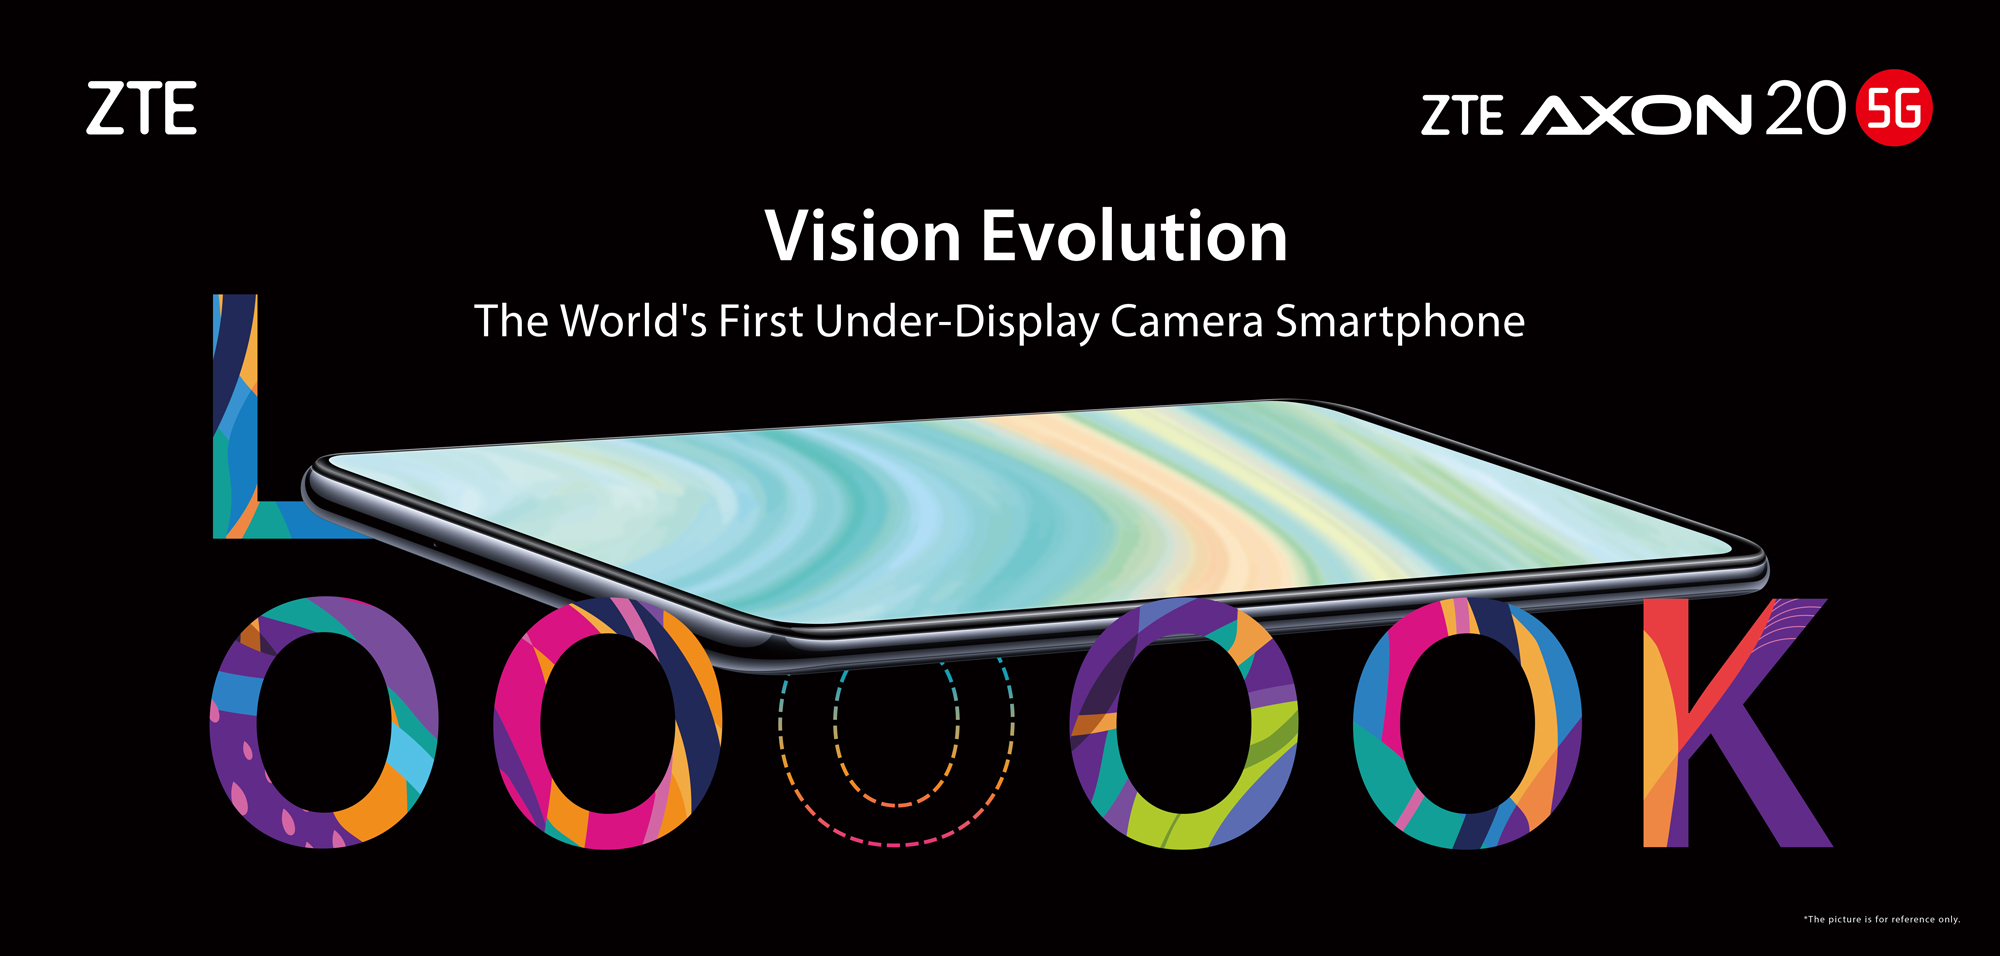 ZTE เปิดตัว Axon 20 5G สมาร์ทโฟนกล้องใต้จอรุ่นแรกของโลก